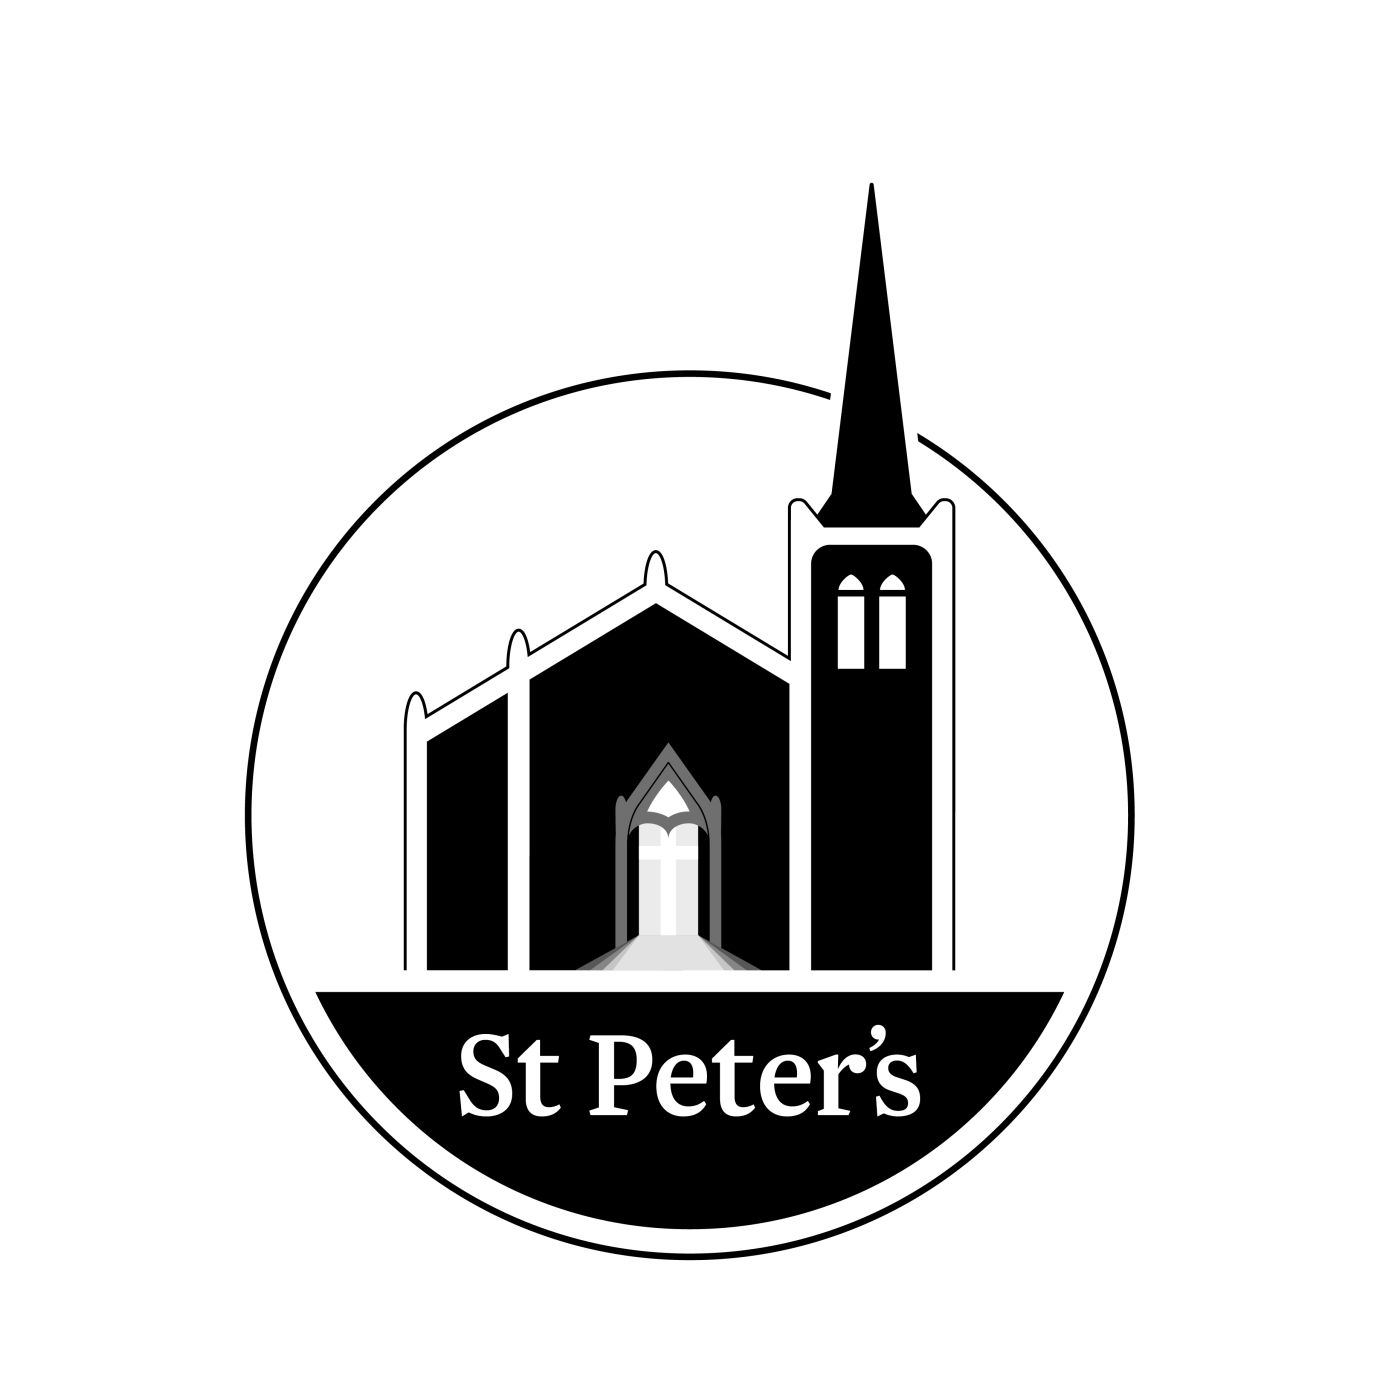 St Peter's on Willis